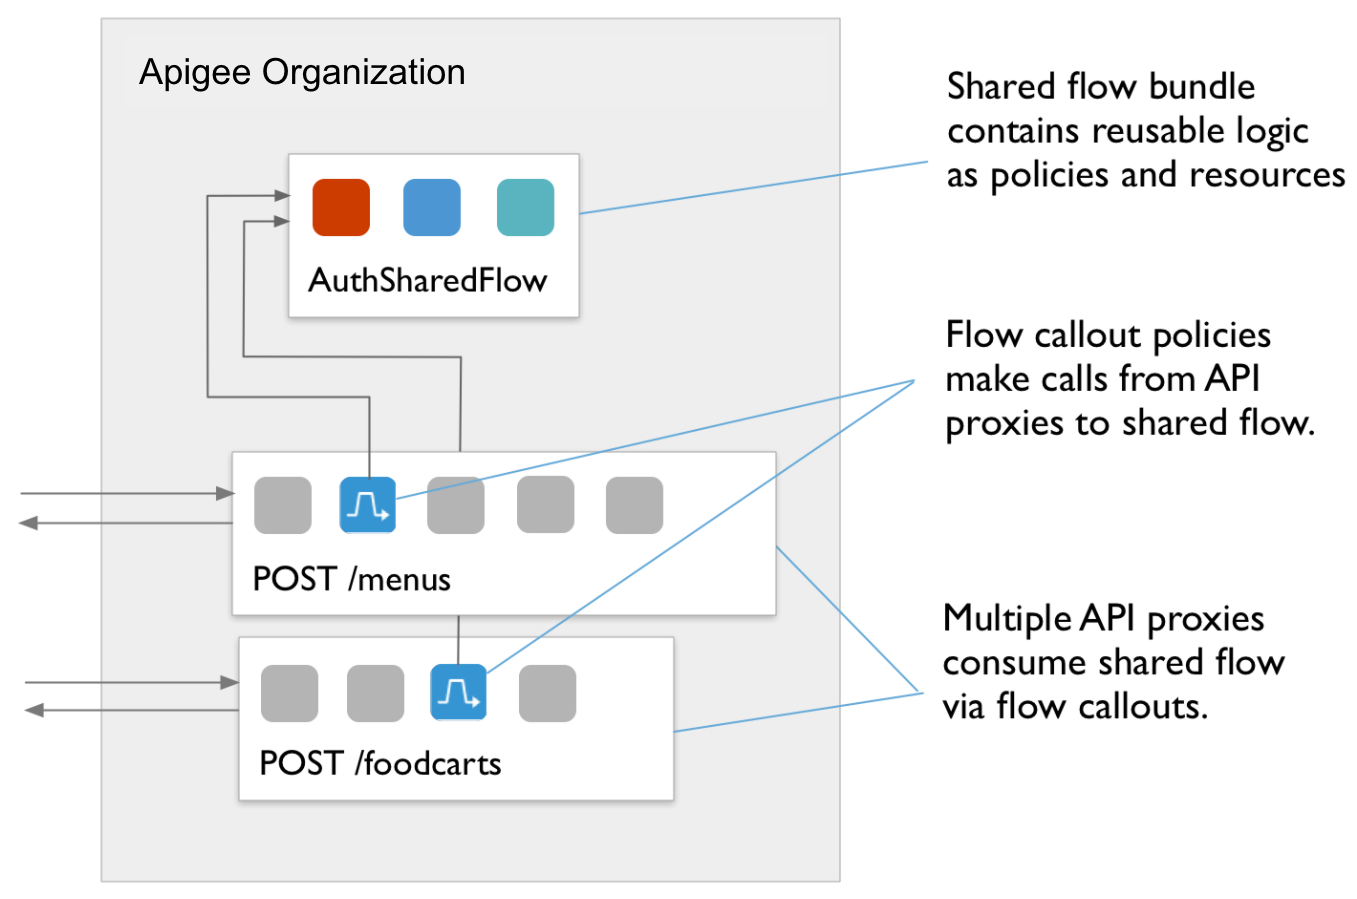 Diagrama de flujo que muestra la política POST/foodcarts a la política POST/menus para AuthSharedFlow.
          Texto destacado: a) Múltiples proxies de API consumen un flujo compartido mediante FlowCallouts.
          b) Las políticas de FlowCallout realizan llamadas desde proxies de API a un flujo compartido.
          c) El paquete de flujo compartido contiene una lógica reutilizable como políticas y recursos.